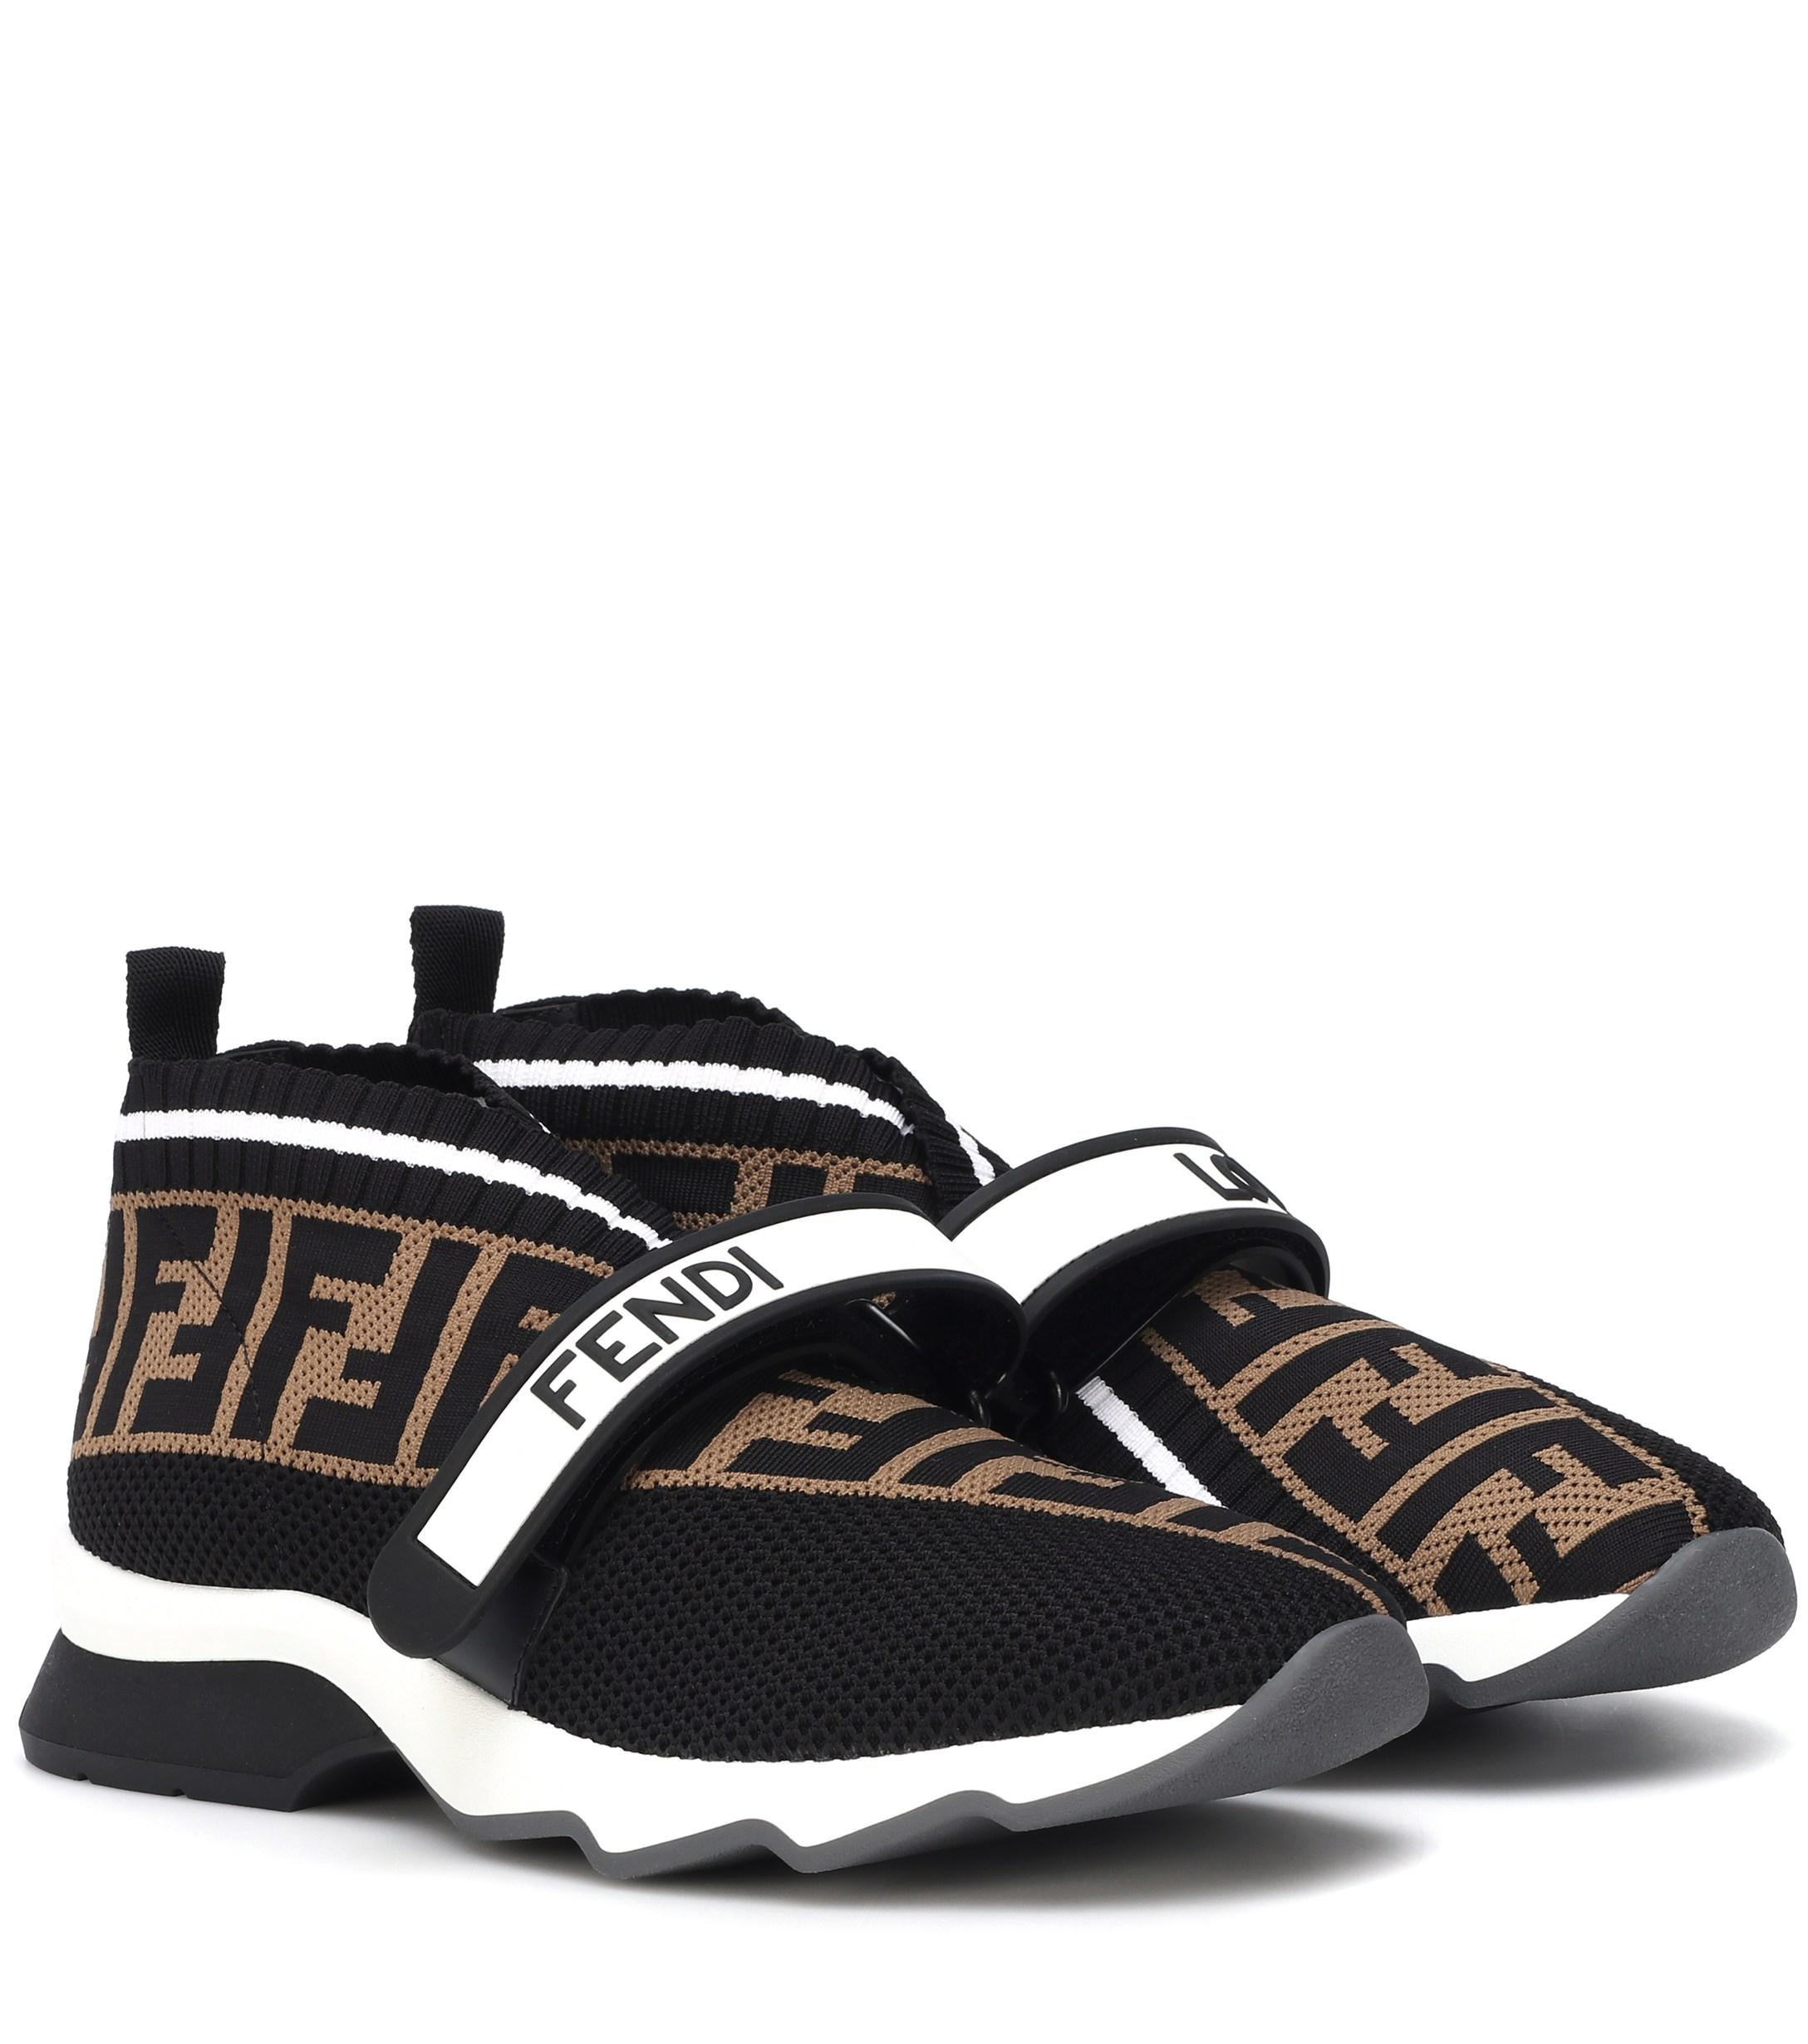 Fendi Leather Rockoko Knit Sneakers in Brown - Lyst